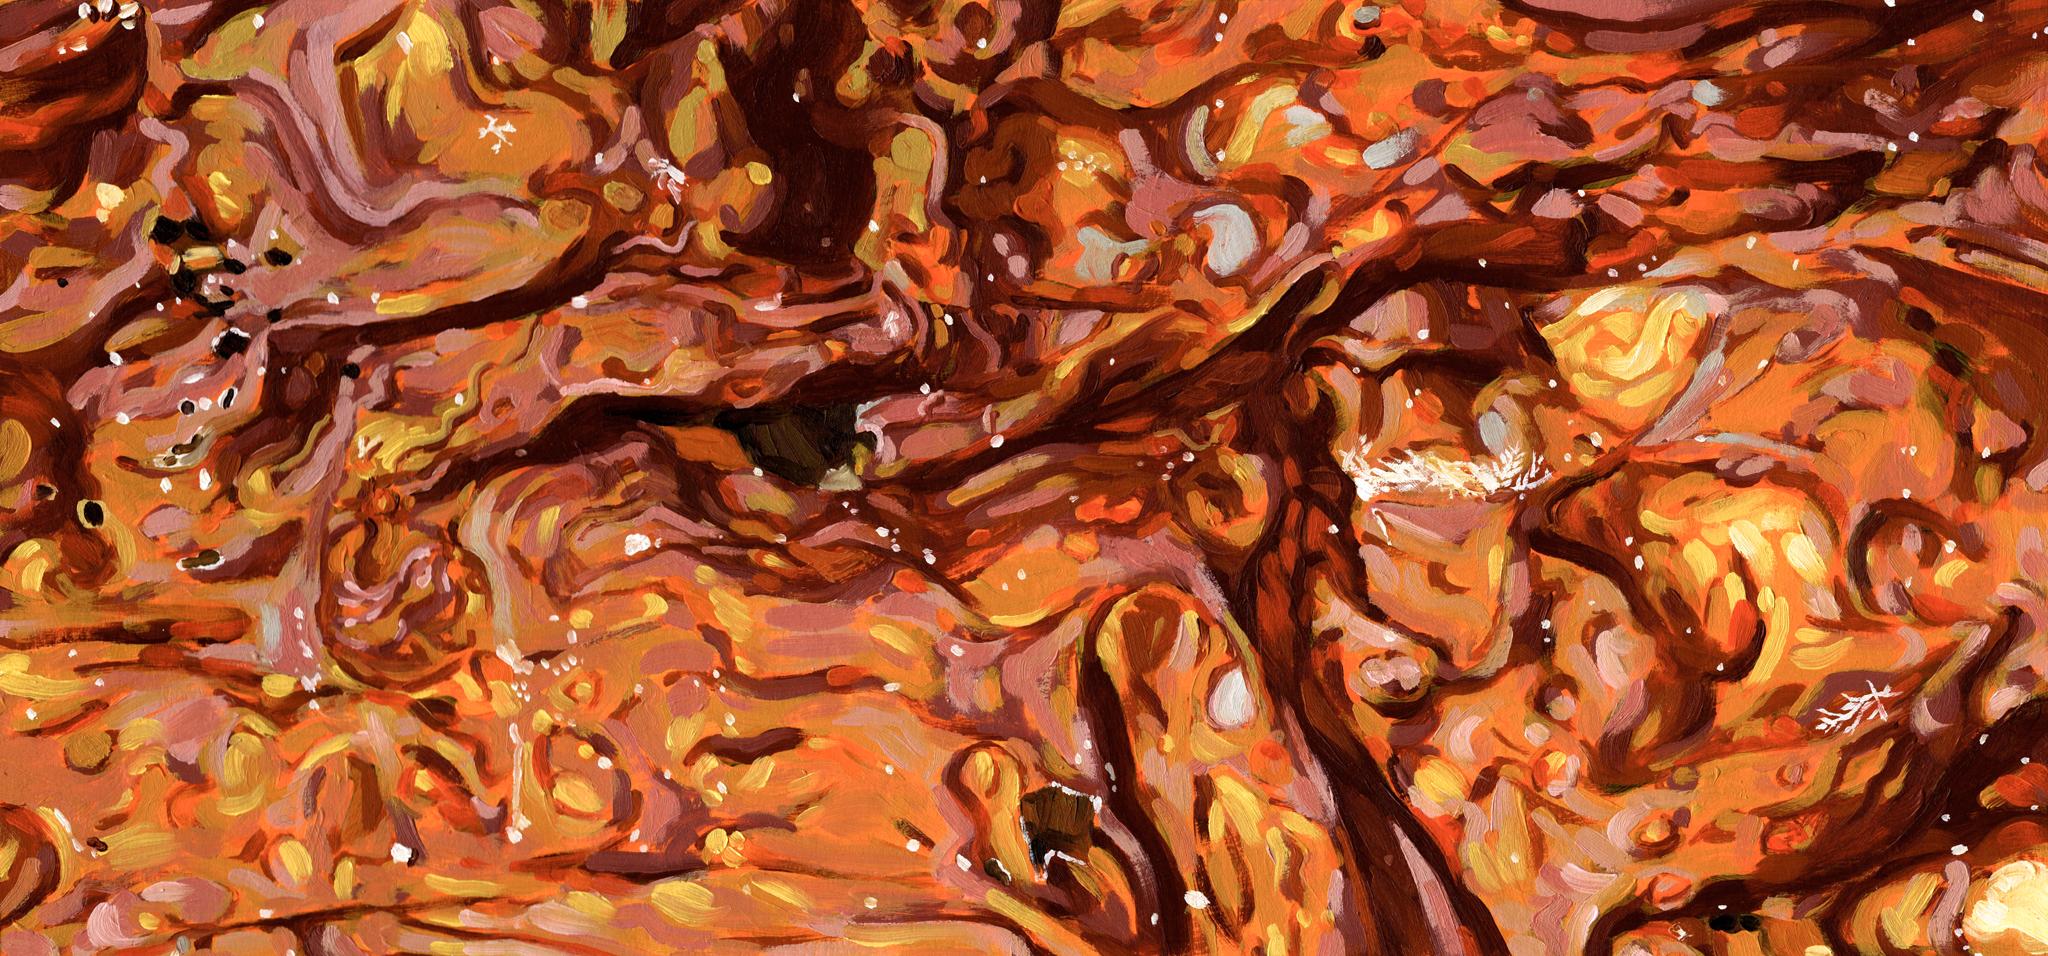 Art contemporain canadien de Christian Frederiksen - Algues brûlées par le soleil